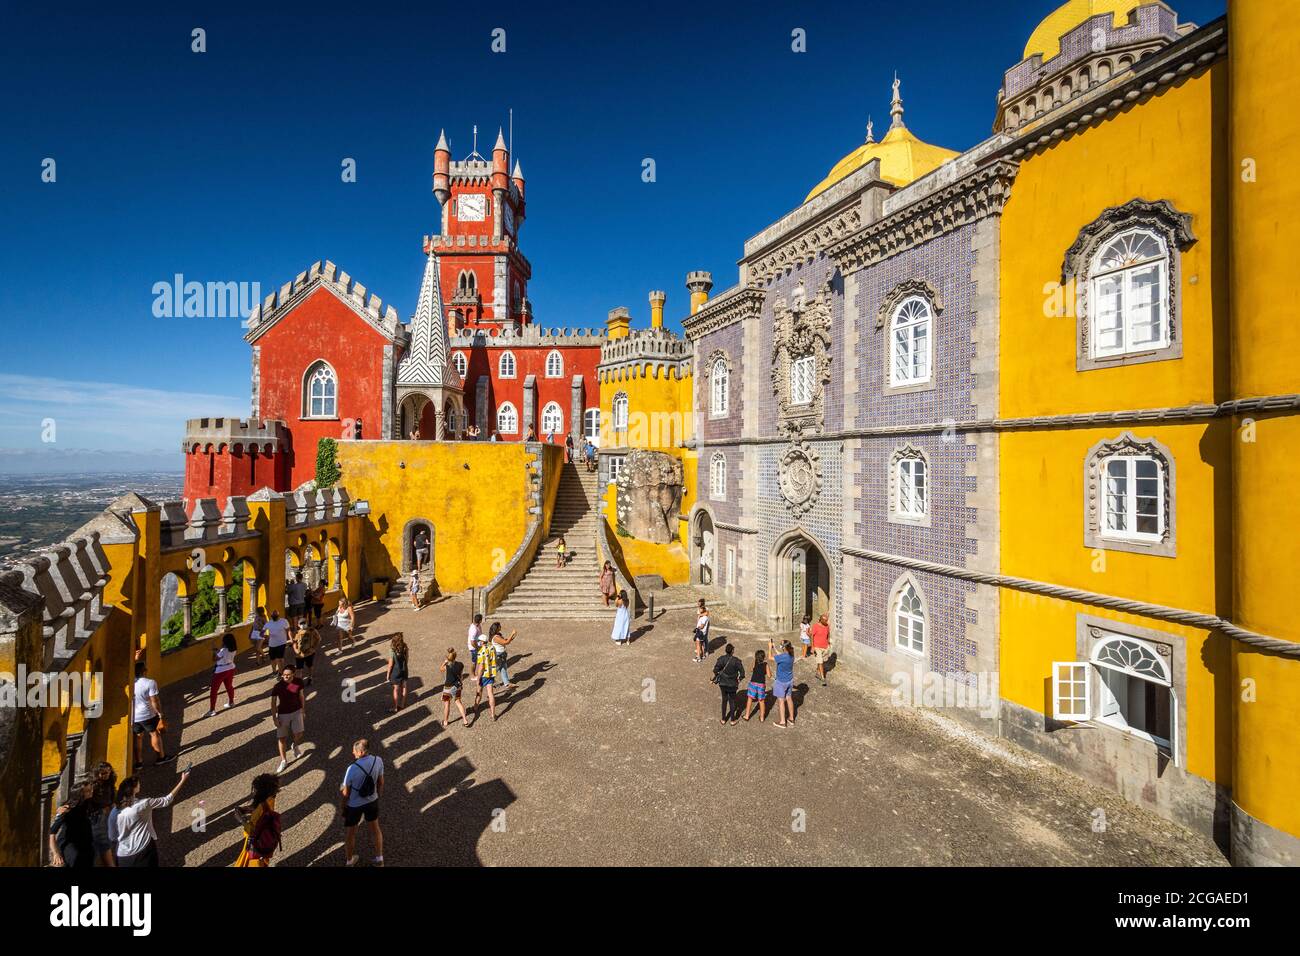 Belle vue sur le vieux château historique coloré de Sintra, près de Lisbonne, Portugal Banque D'Images